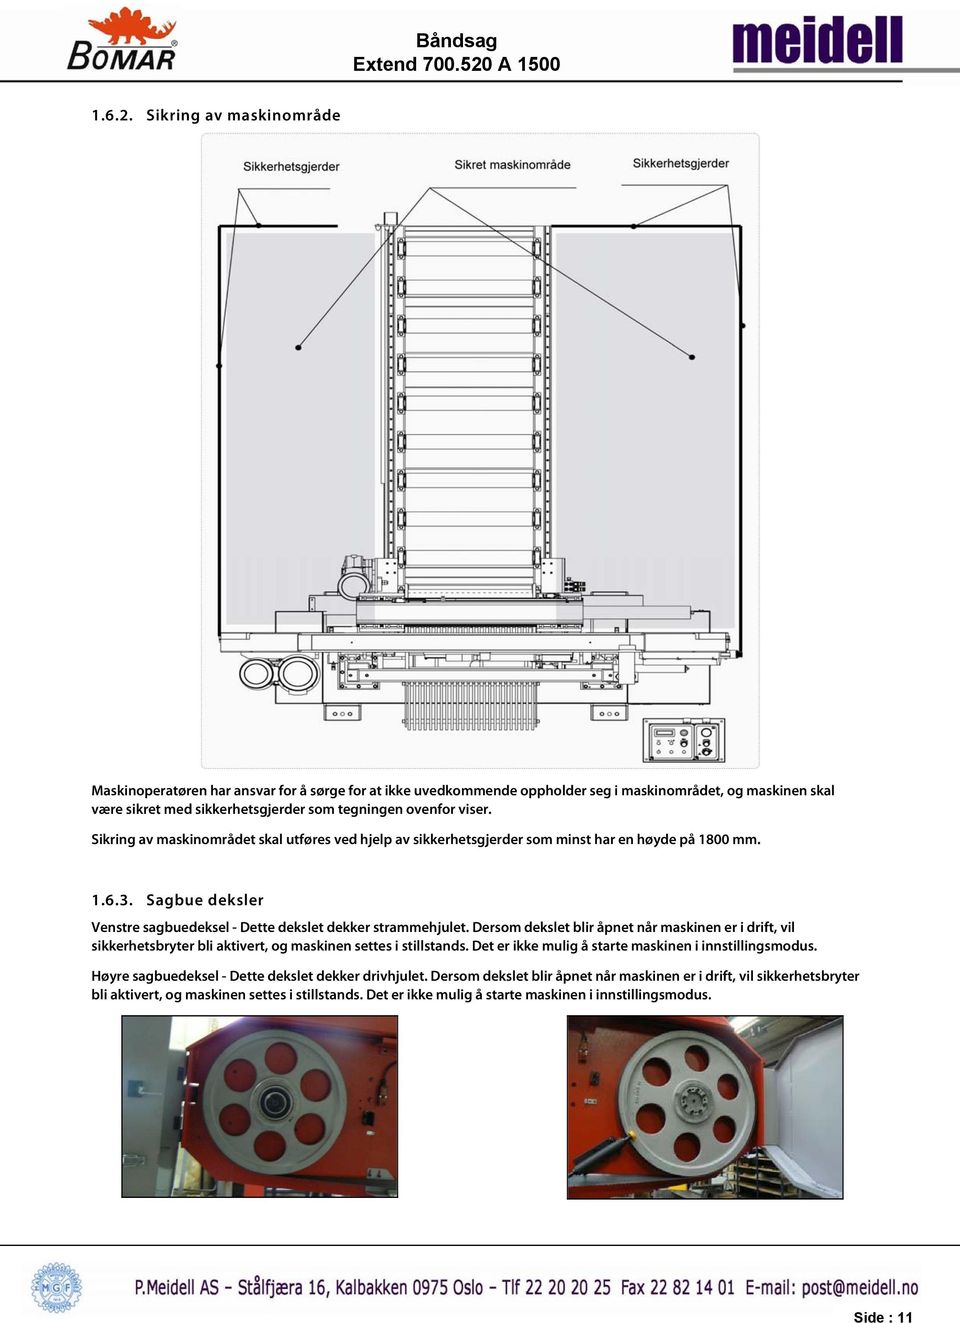 Sikring av maskinområdet skal utføres ved hjelp av sikkerhetsgjerder som minst har en høyde på 1800 mm. 1.6.3. Sagbue deksler Venstre sagbuedeksel - Dette dekslet dekker strammehjulet.